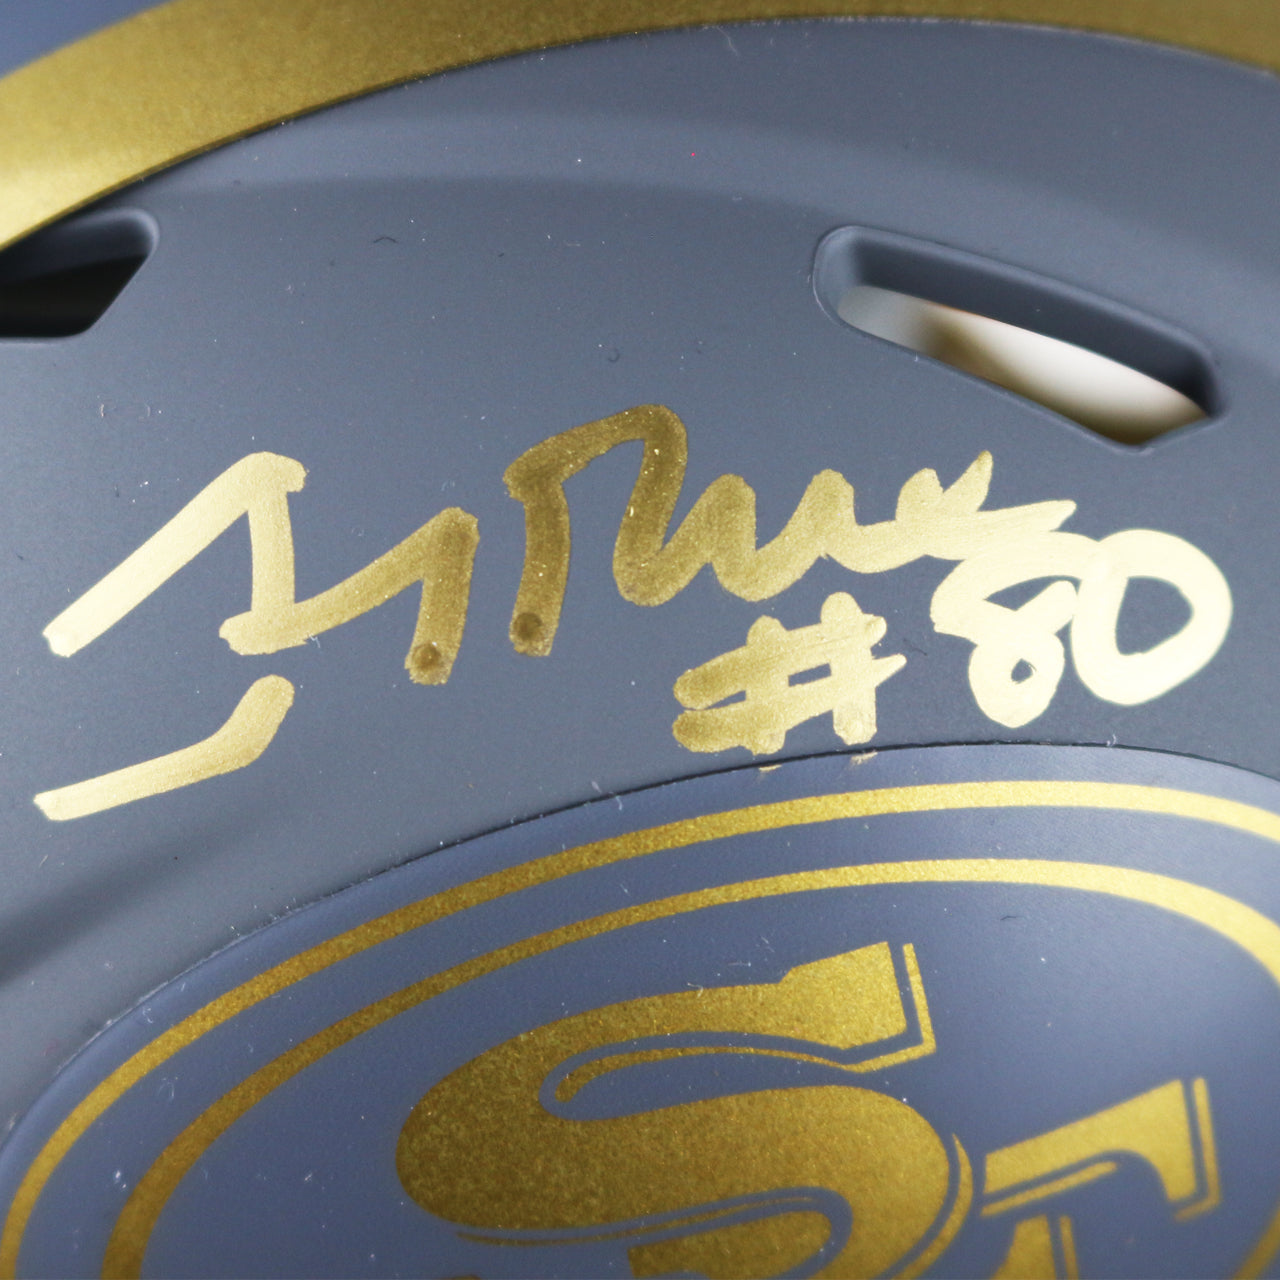 Jerry Rice Signed 49ers Slate Mini Helmet